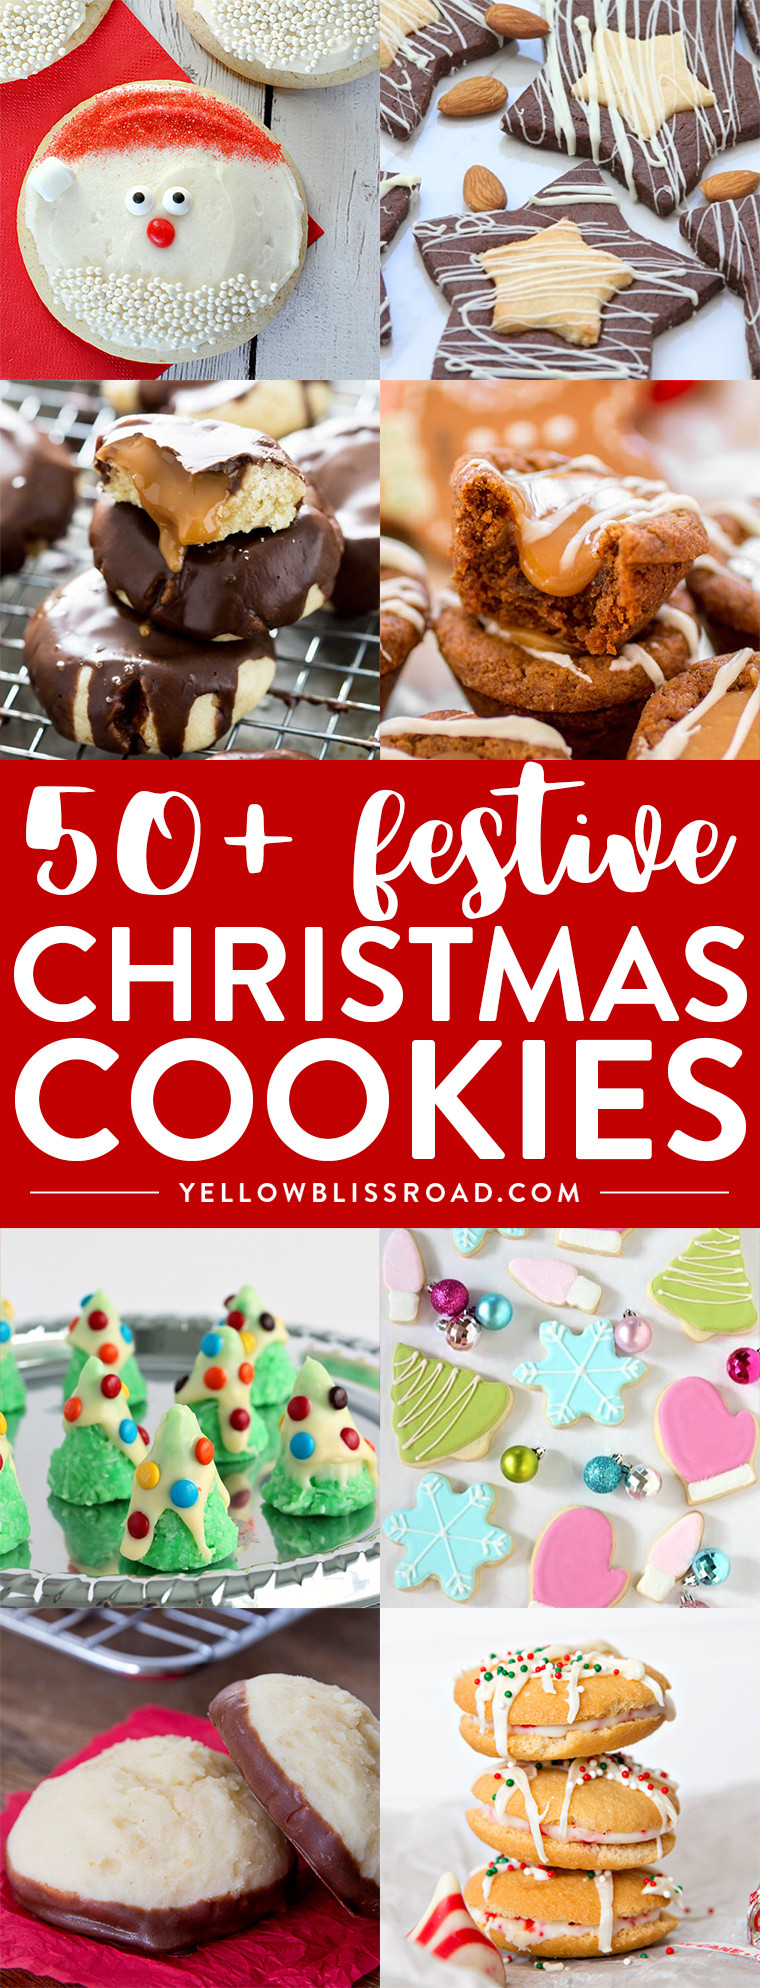 Festive Christmas Cookies
 50 Festive Christmas Cookie Recipes